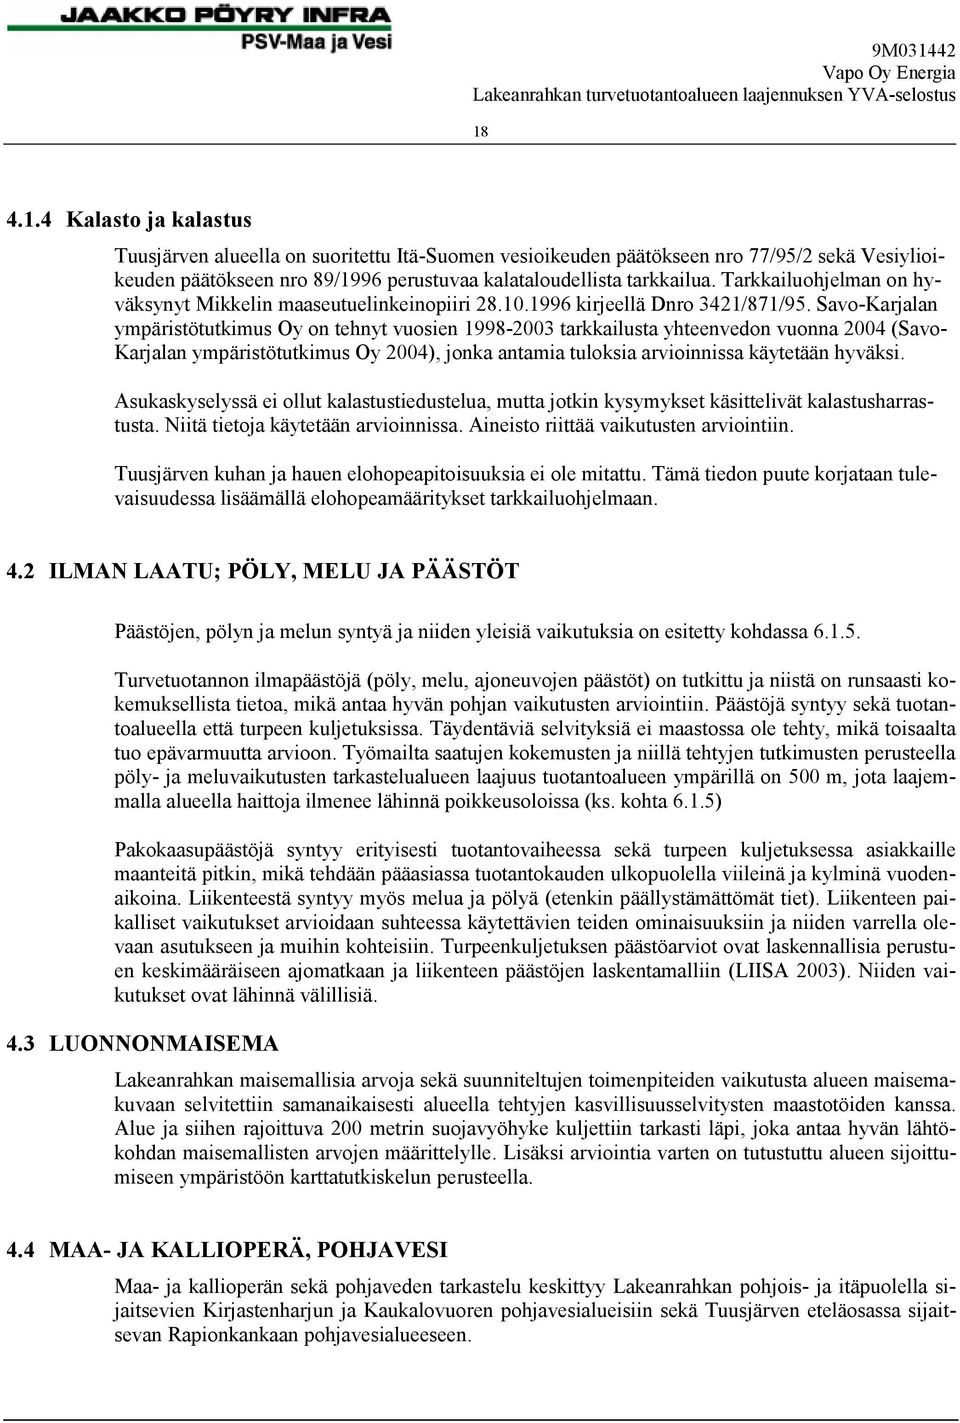 Savo-Karjalan ympäristötutkimus Oy on tehnyt vuosien 1998-2003 tarkkailusta yhteenvedon vuonna 2004 (Savo- Karjalan ympäristötutkimus Oy 2004), jonka antamia tuloksia arvioinnissa käytetään hyväksi.